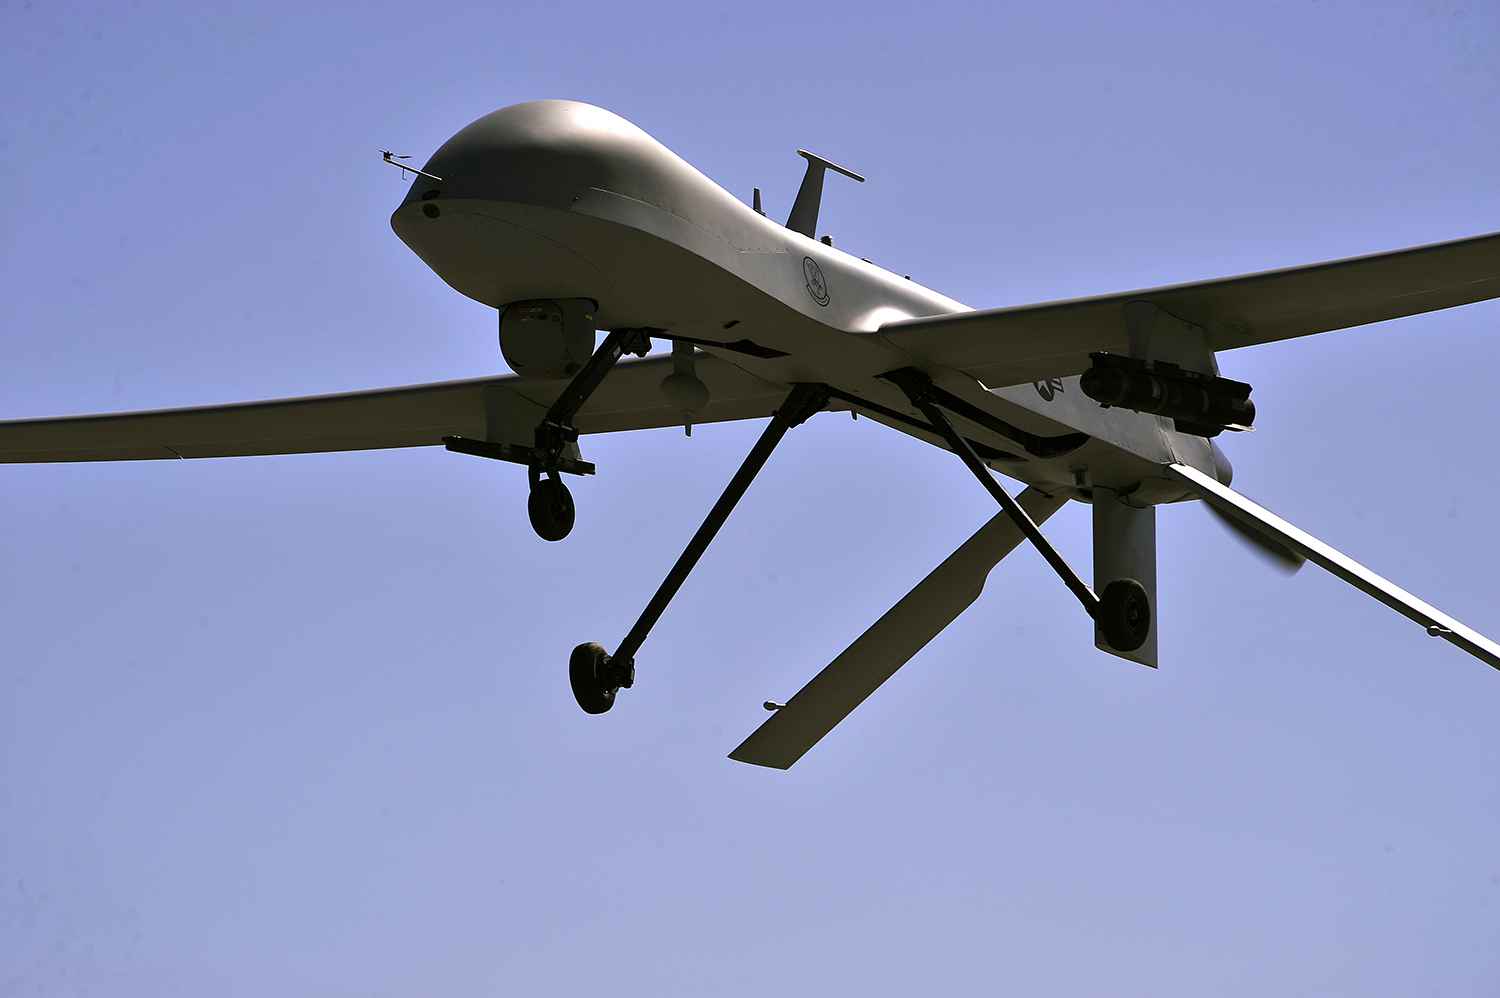 Afrique : Les drones-cargos pourraient-ils révolutionner l’économie ?